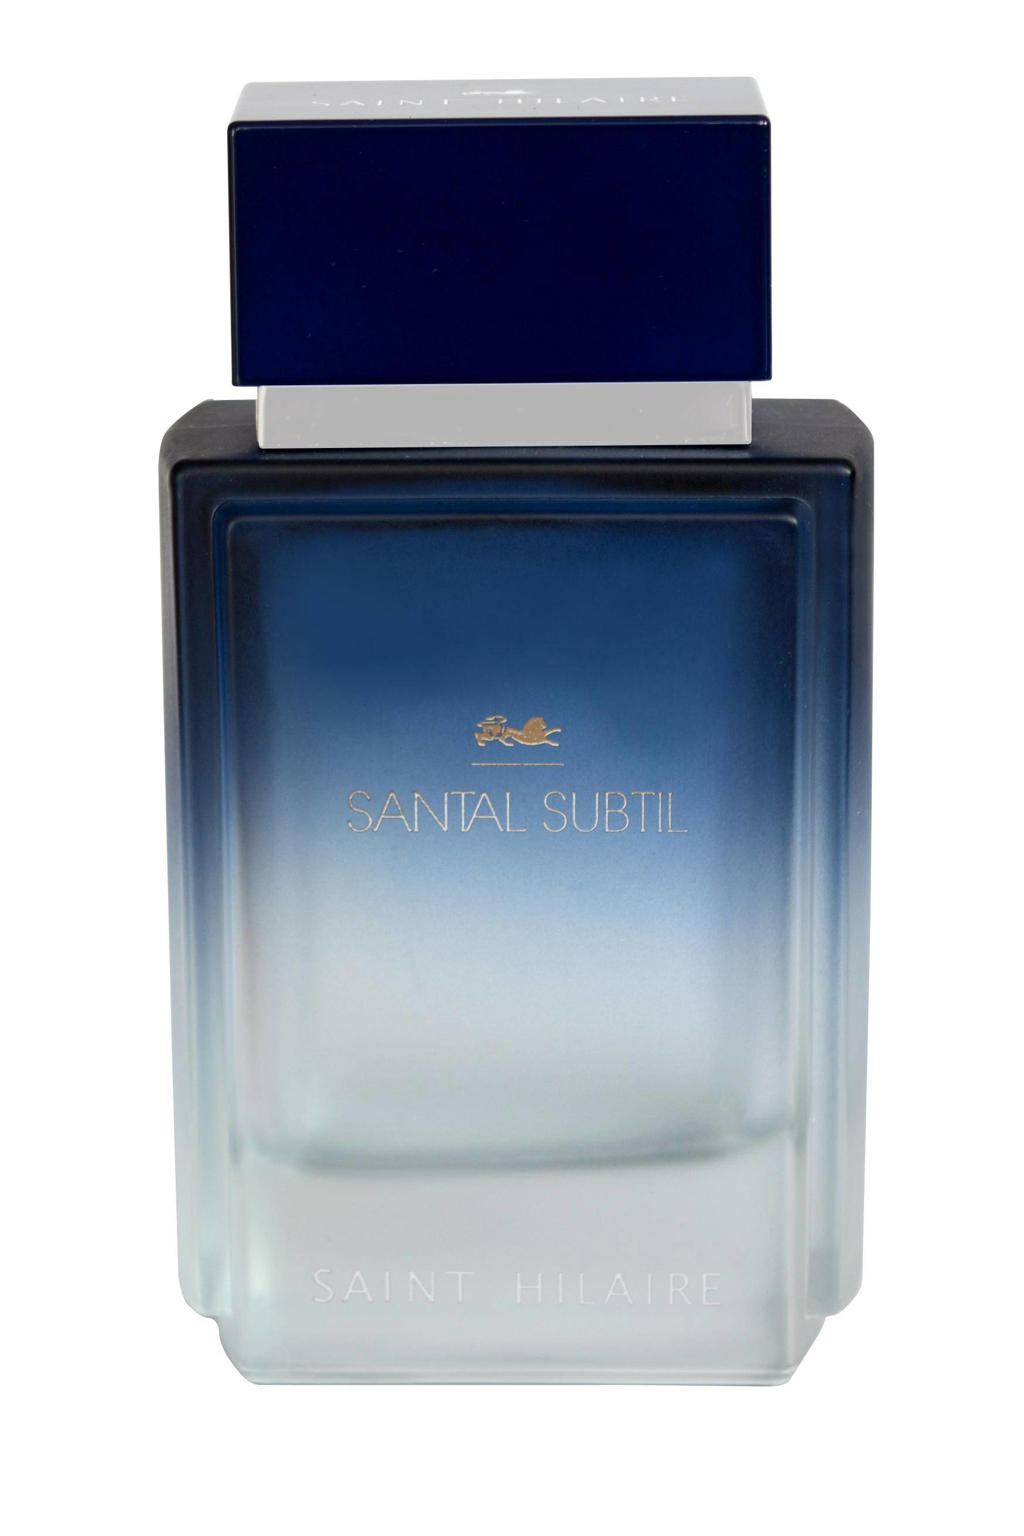 Saint Hilaire Santal Subtil eau de parfum - 100 ml